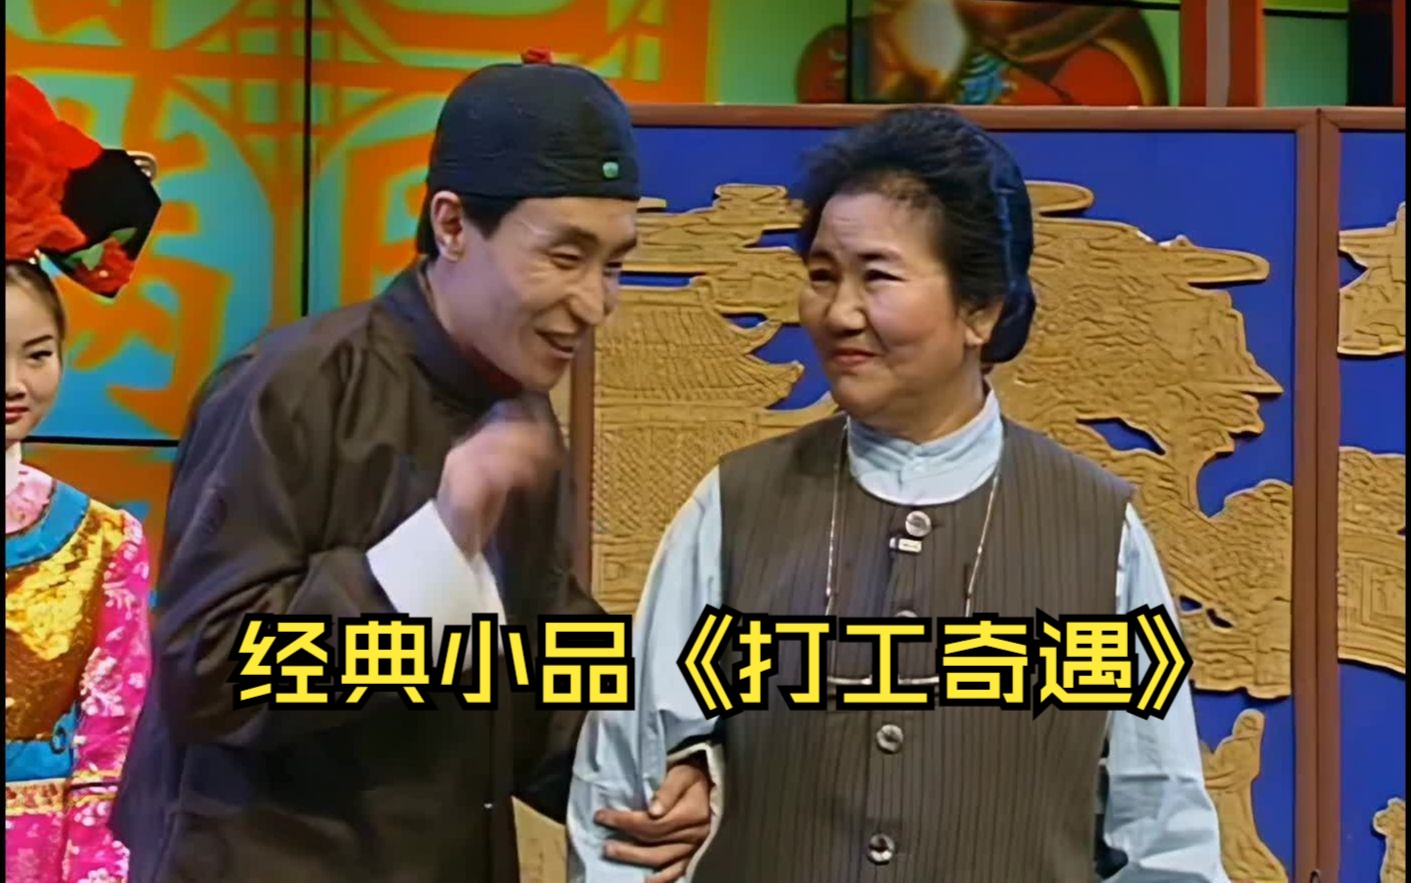 【经典小品】赵丽蓉,巩汉林合作小品《打工奇遇》(1996)